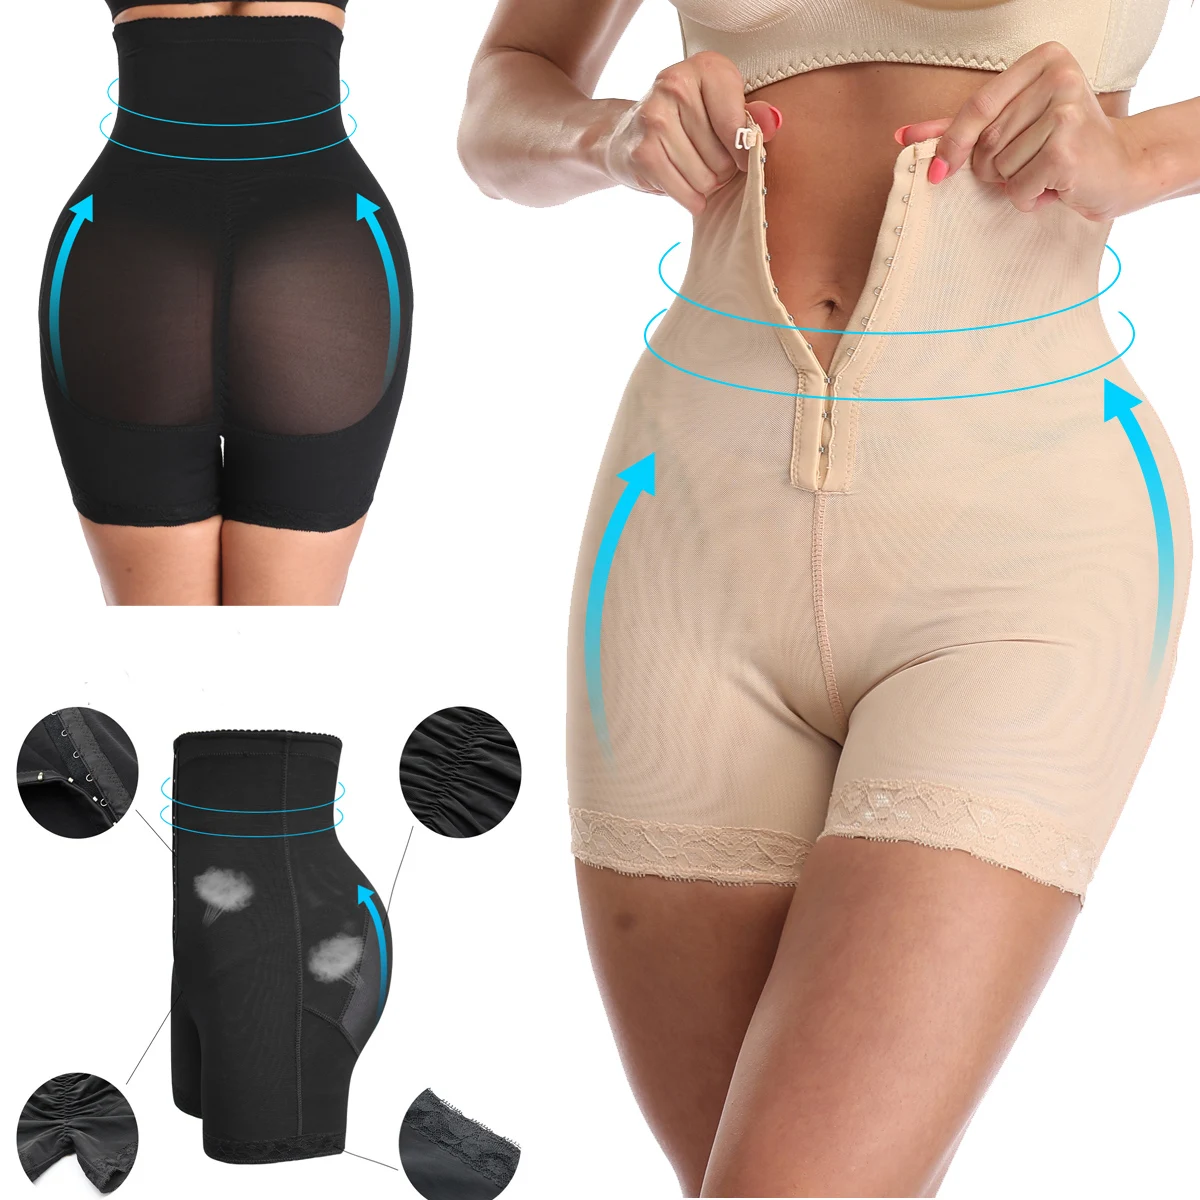 

Latest Women Design Seamless Enhancer shapewear push up Butt Lifter Panties high waist Slimming Body Shaper Women shapers